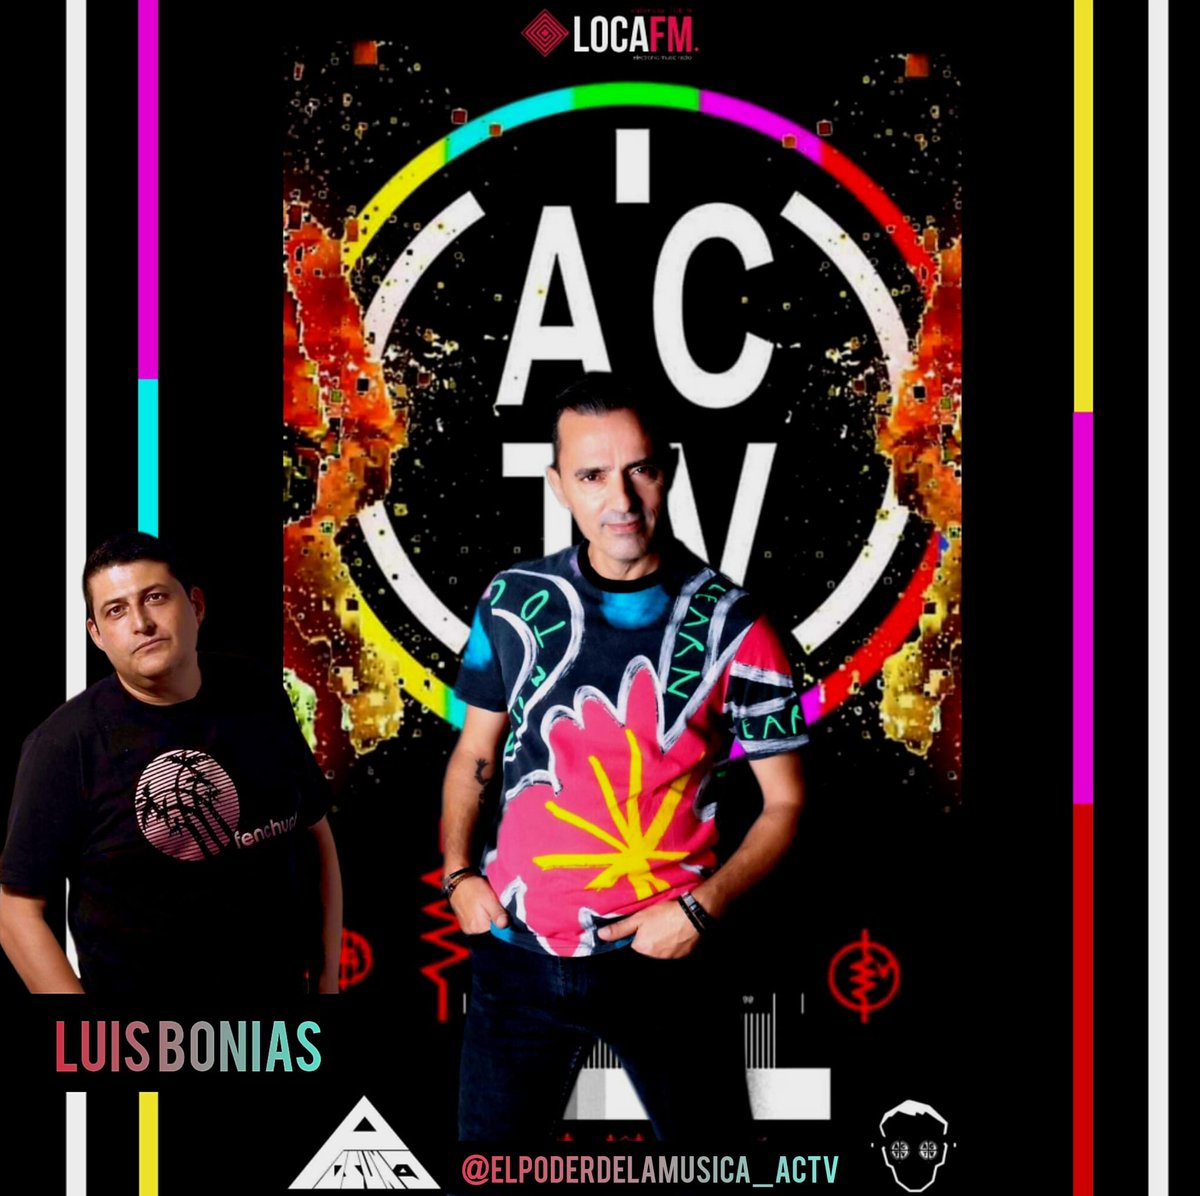 ESTA TARDE 19:00 HORAS #ACTV #ELPODERDELAMUSICA @LocaFmValencia